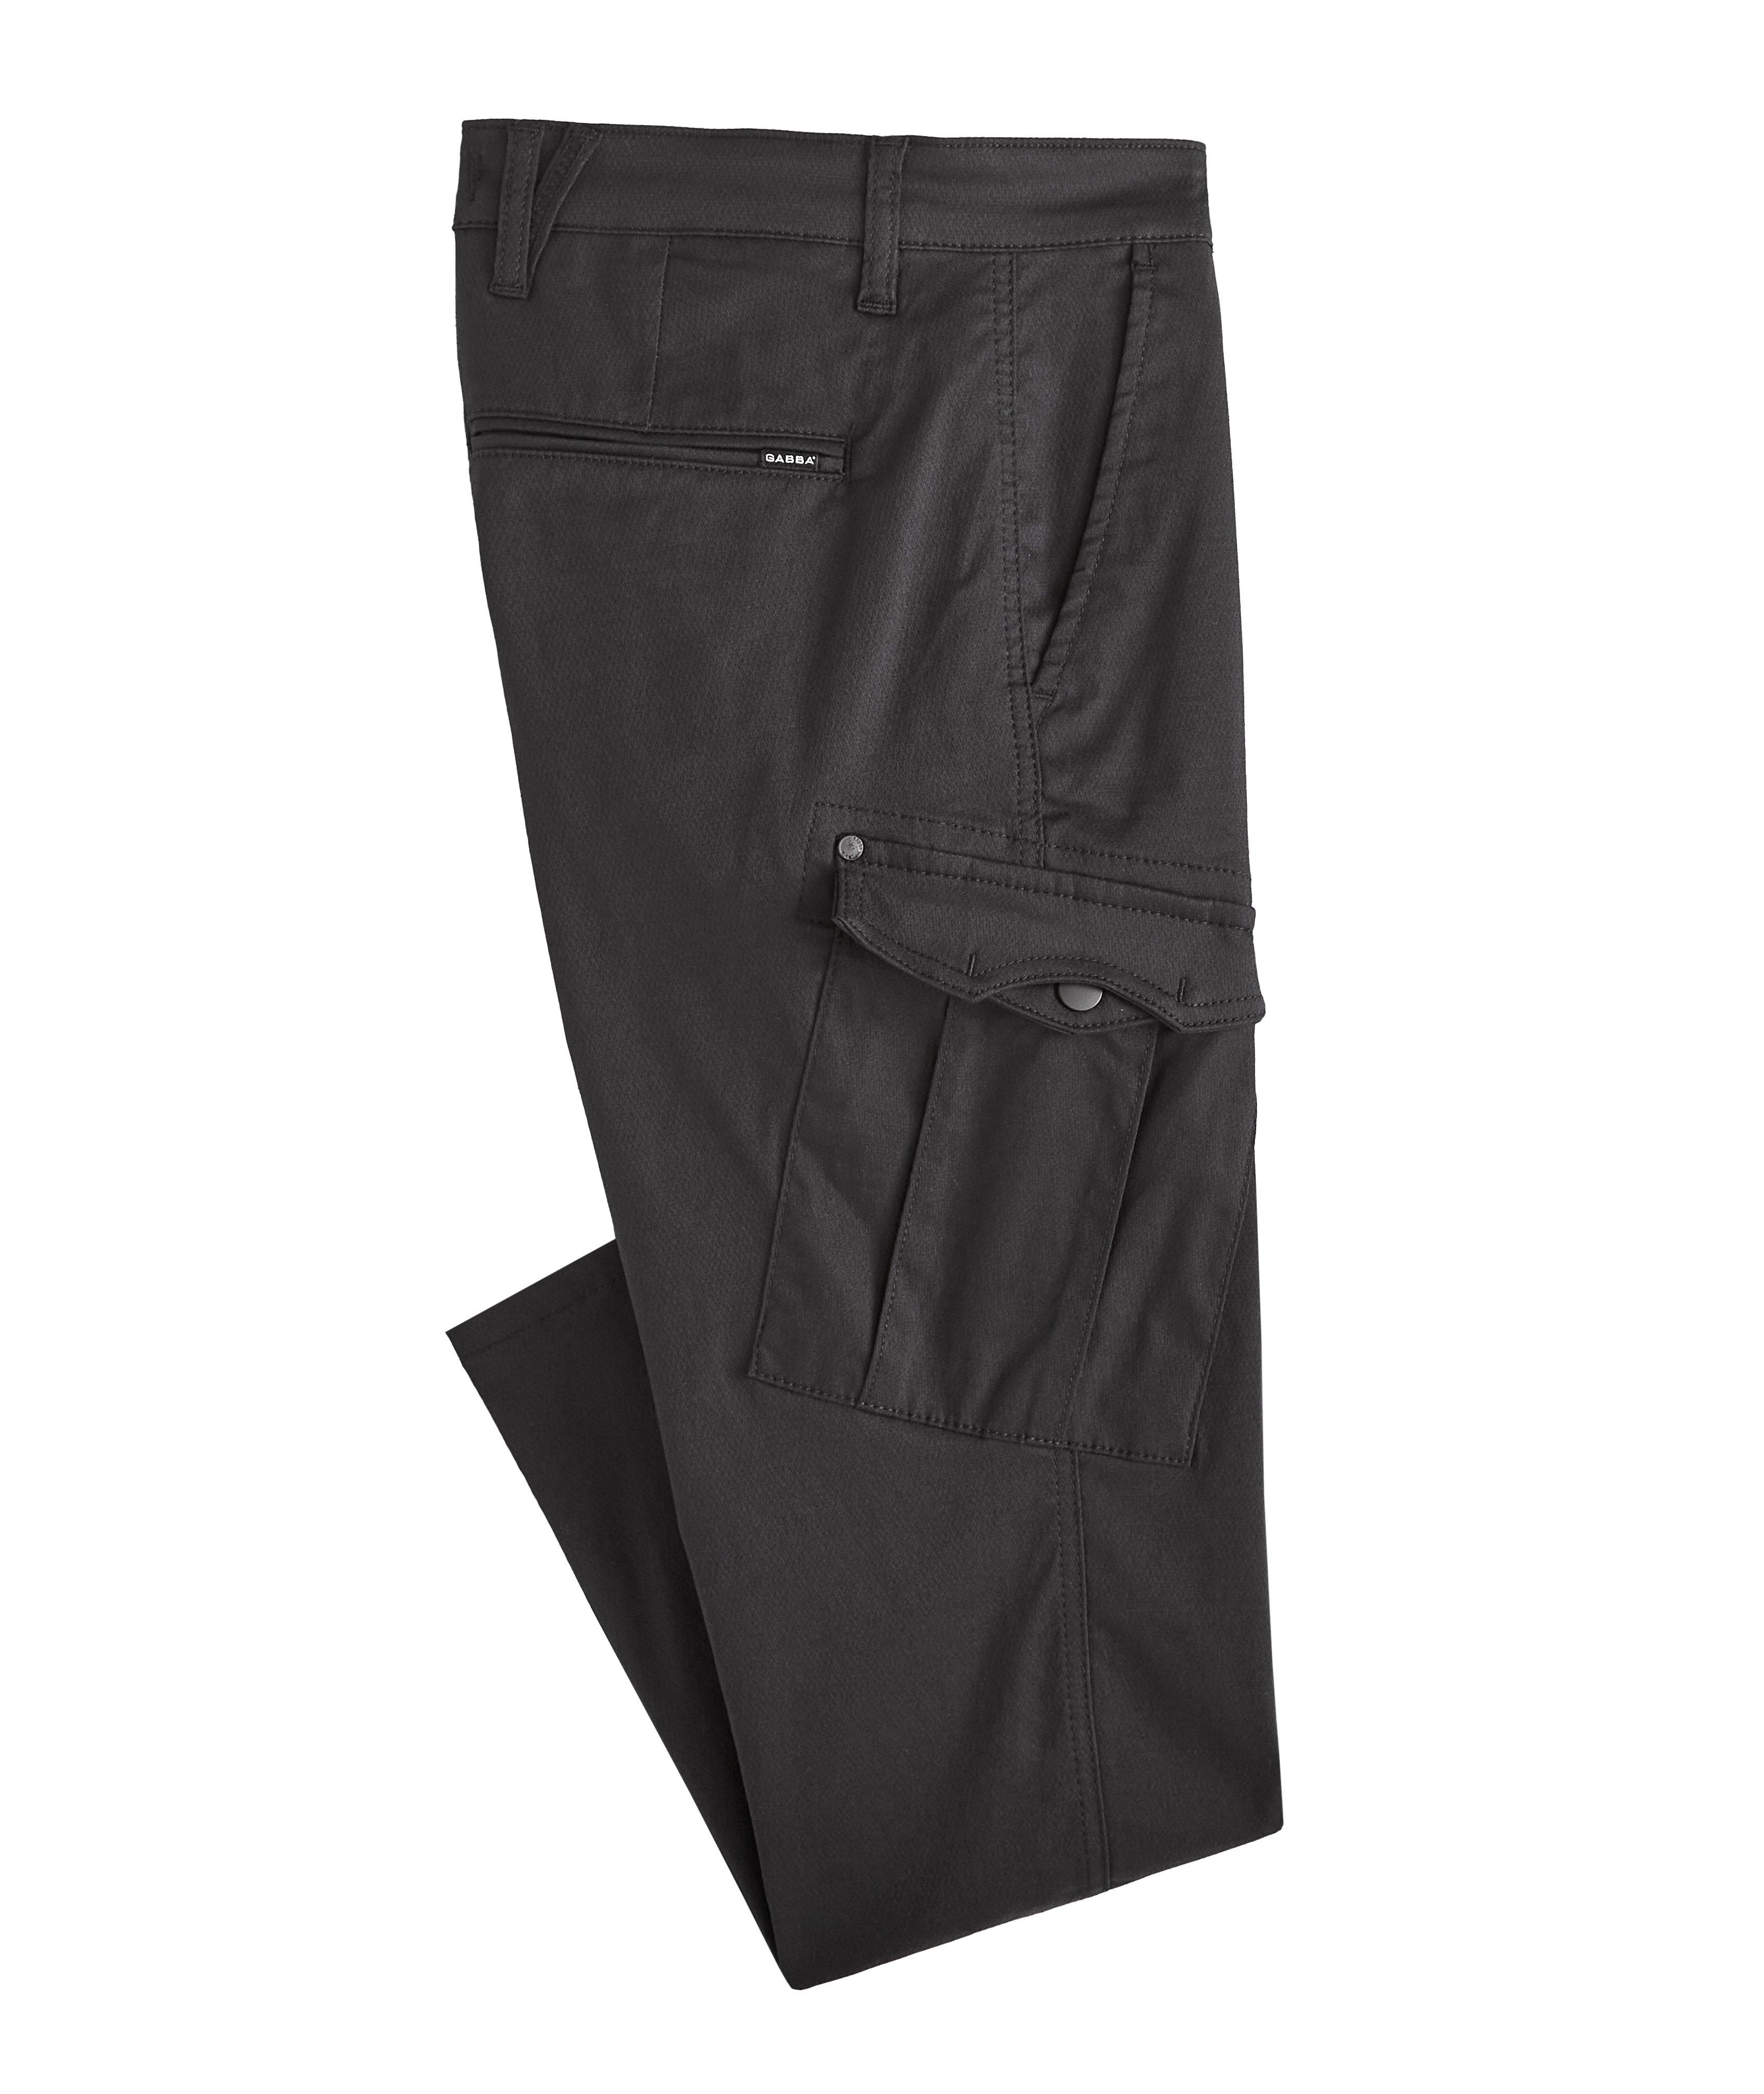 Pantalon Pisa en mélange de coton à poches cargo image 0